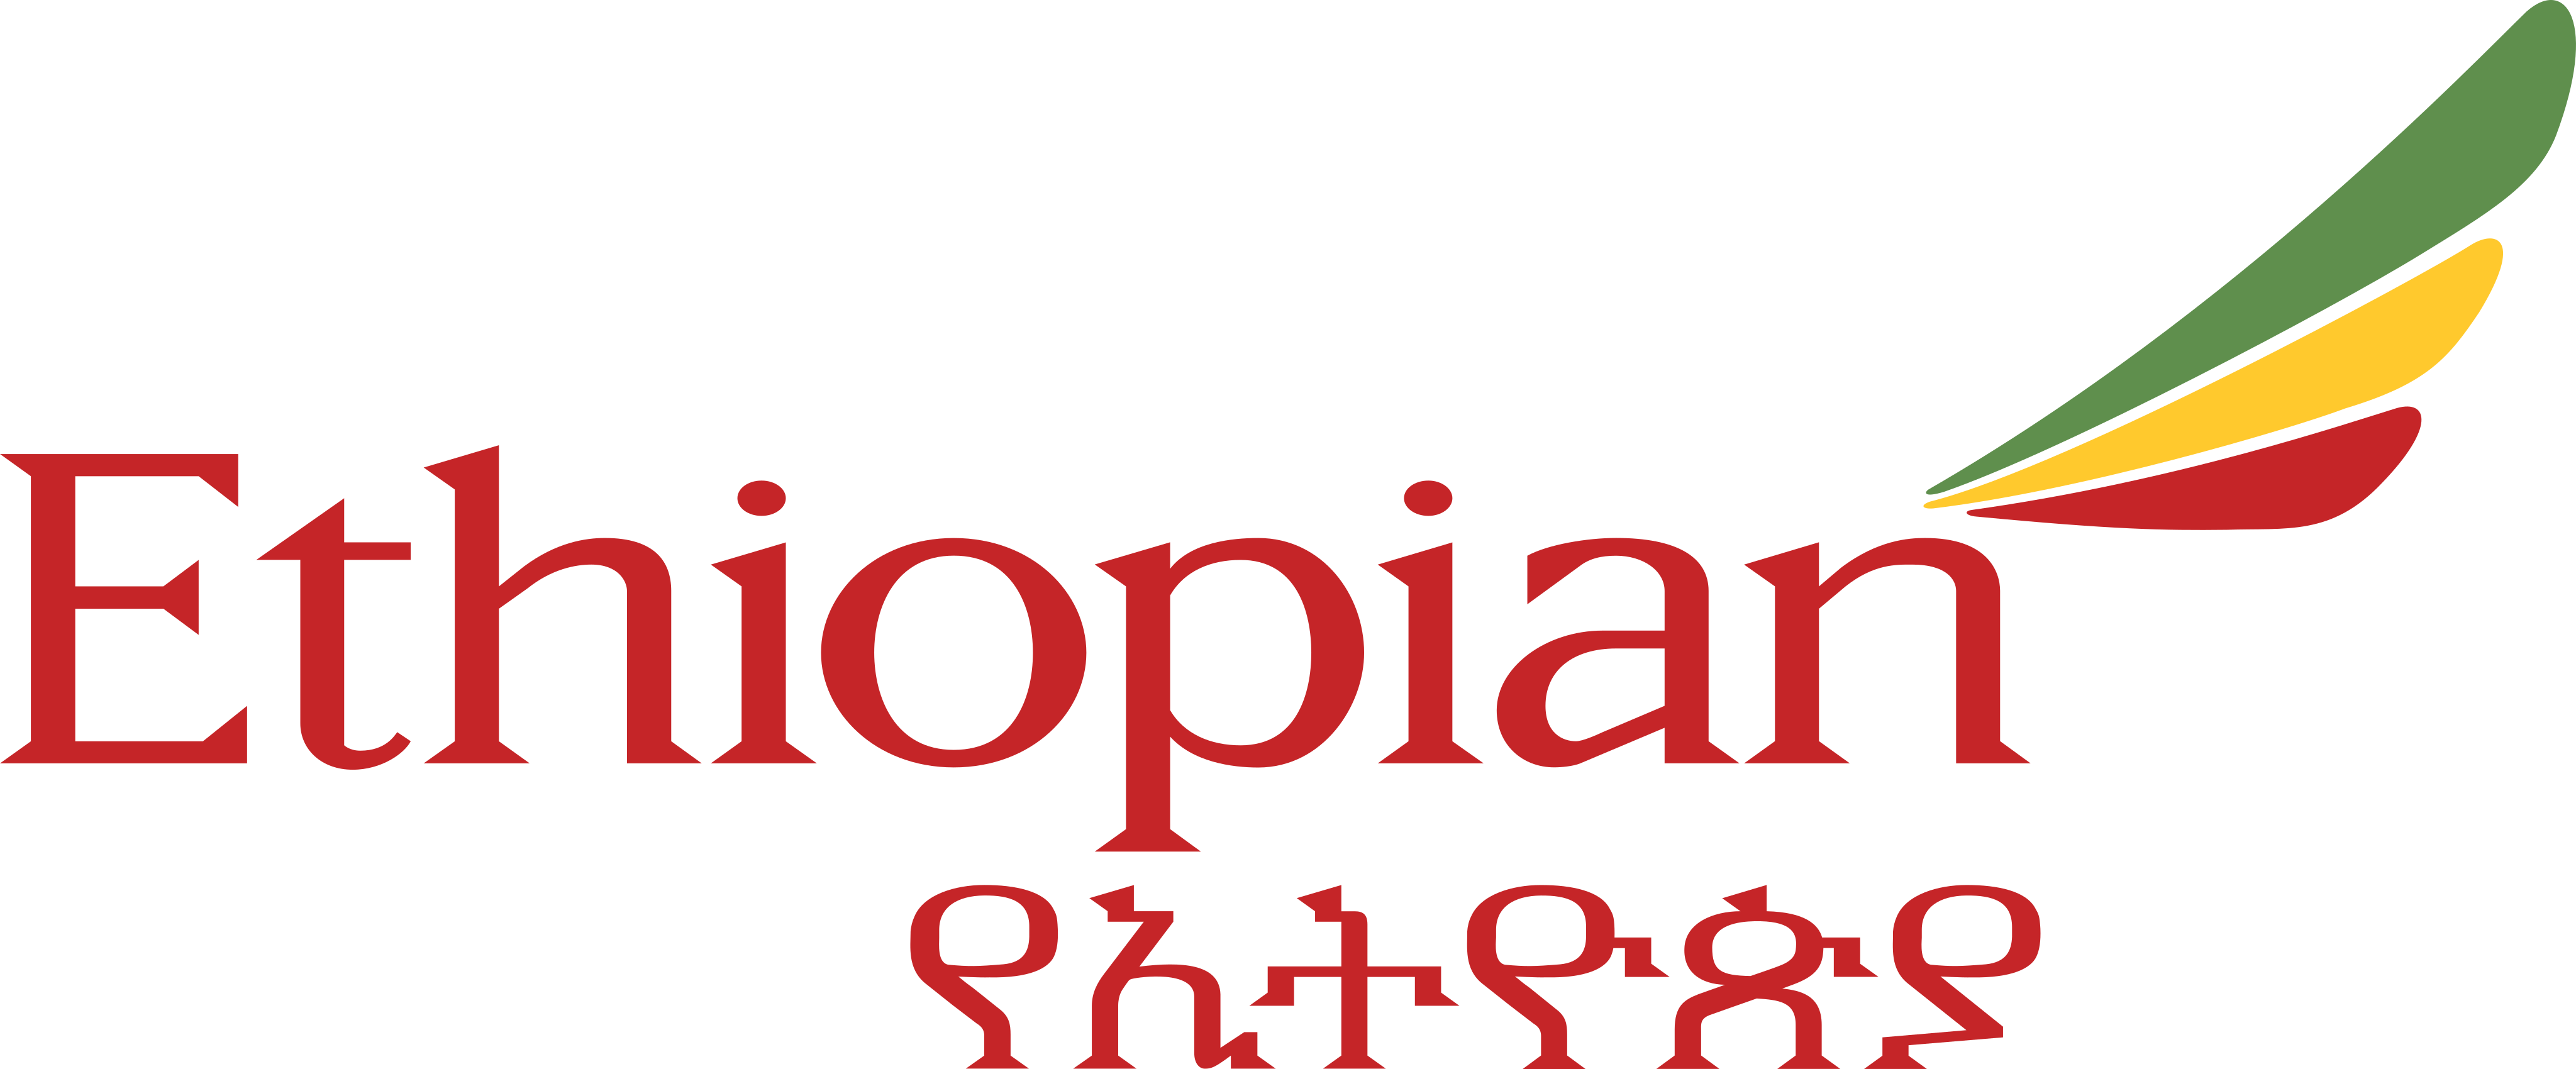 ethiopian airlines logo 1 - Ethiopian Airlines Logo